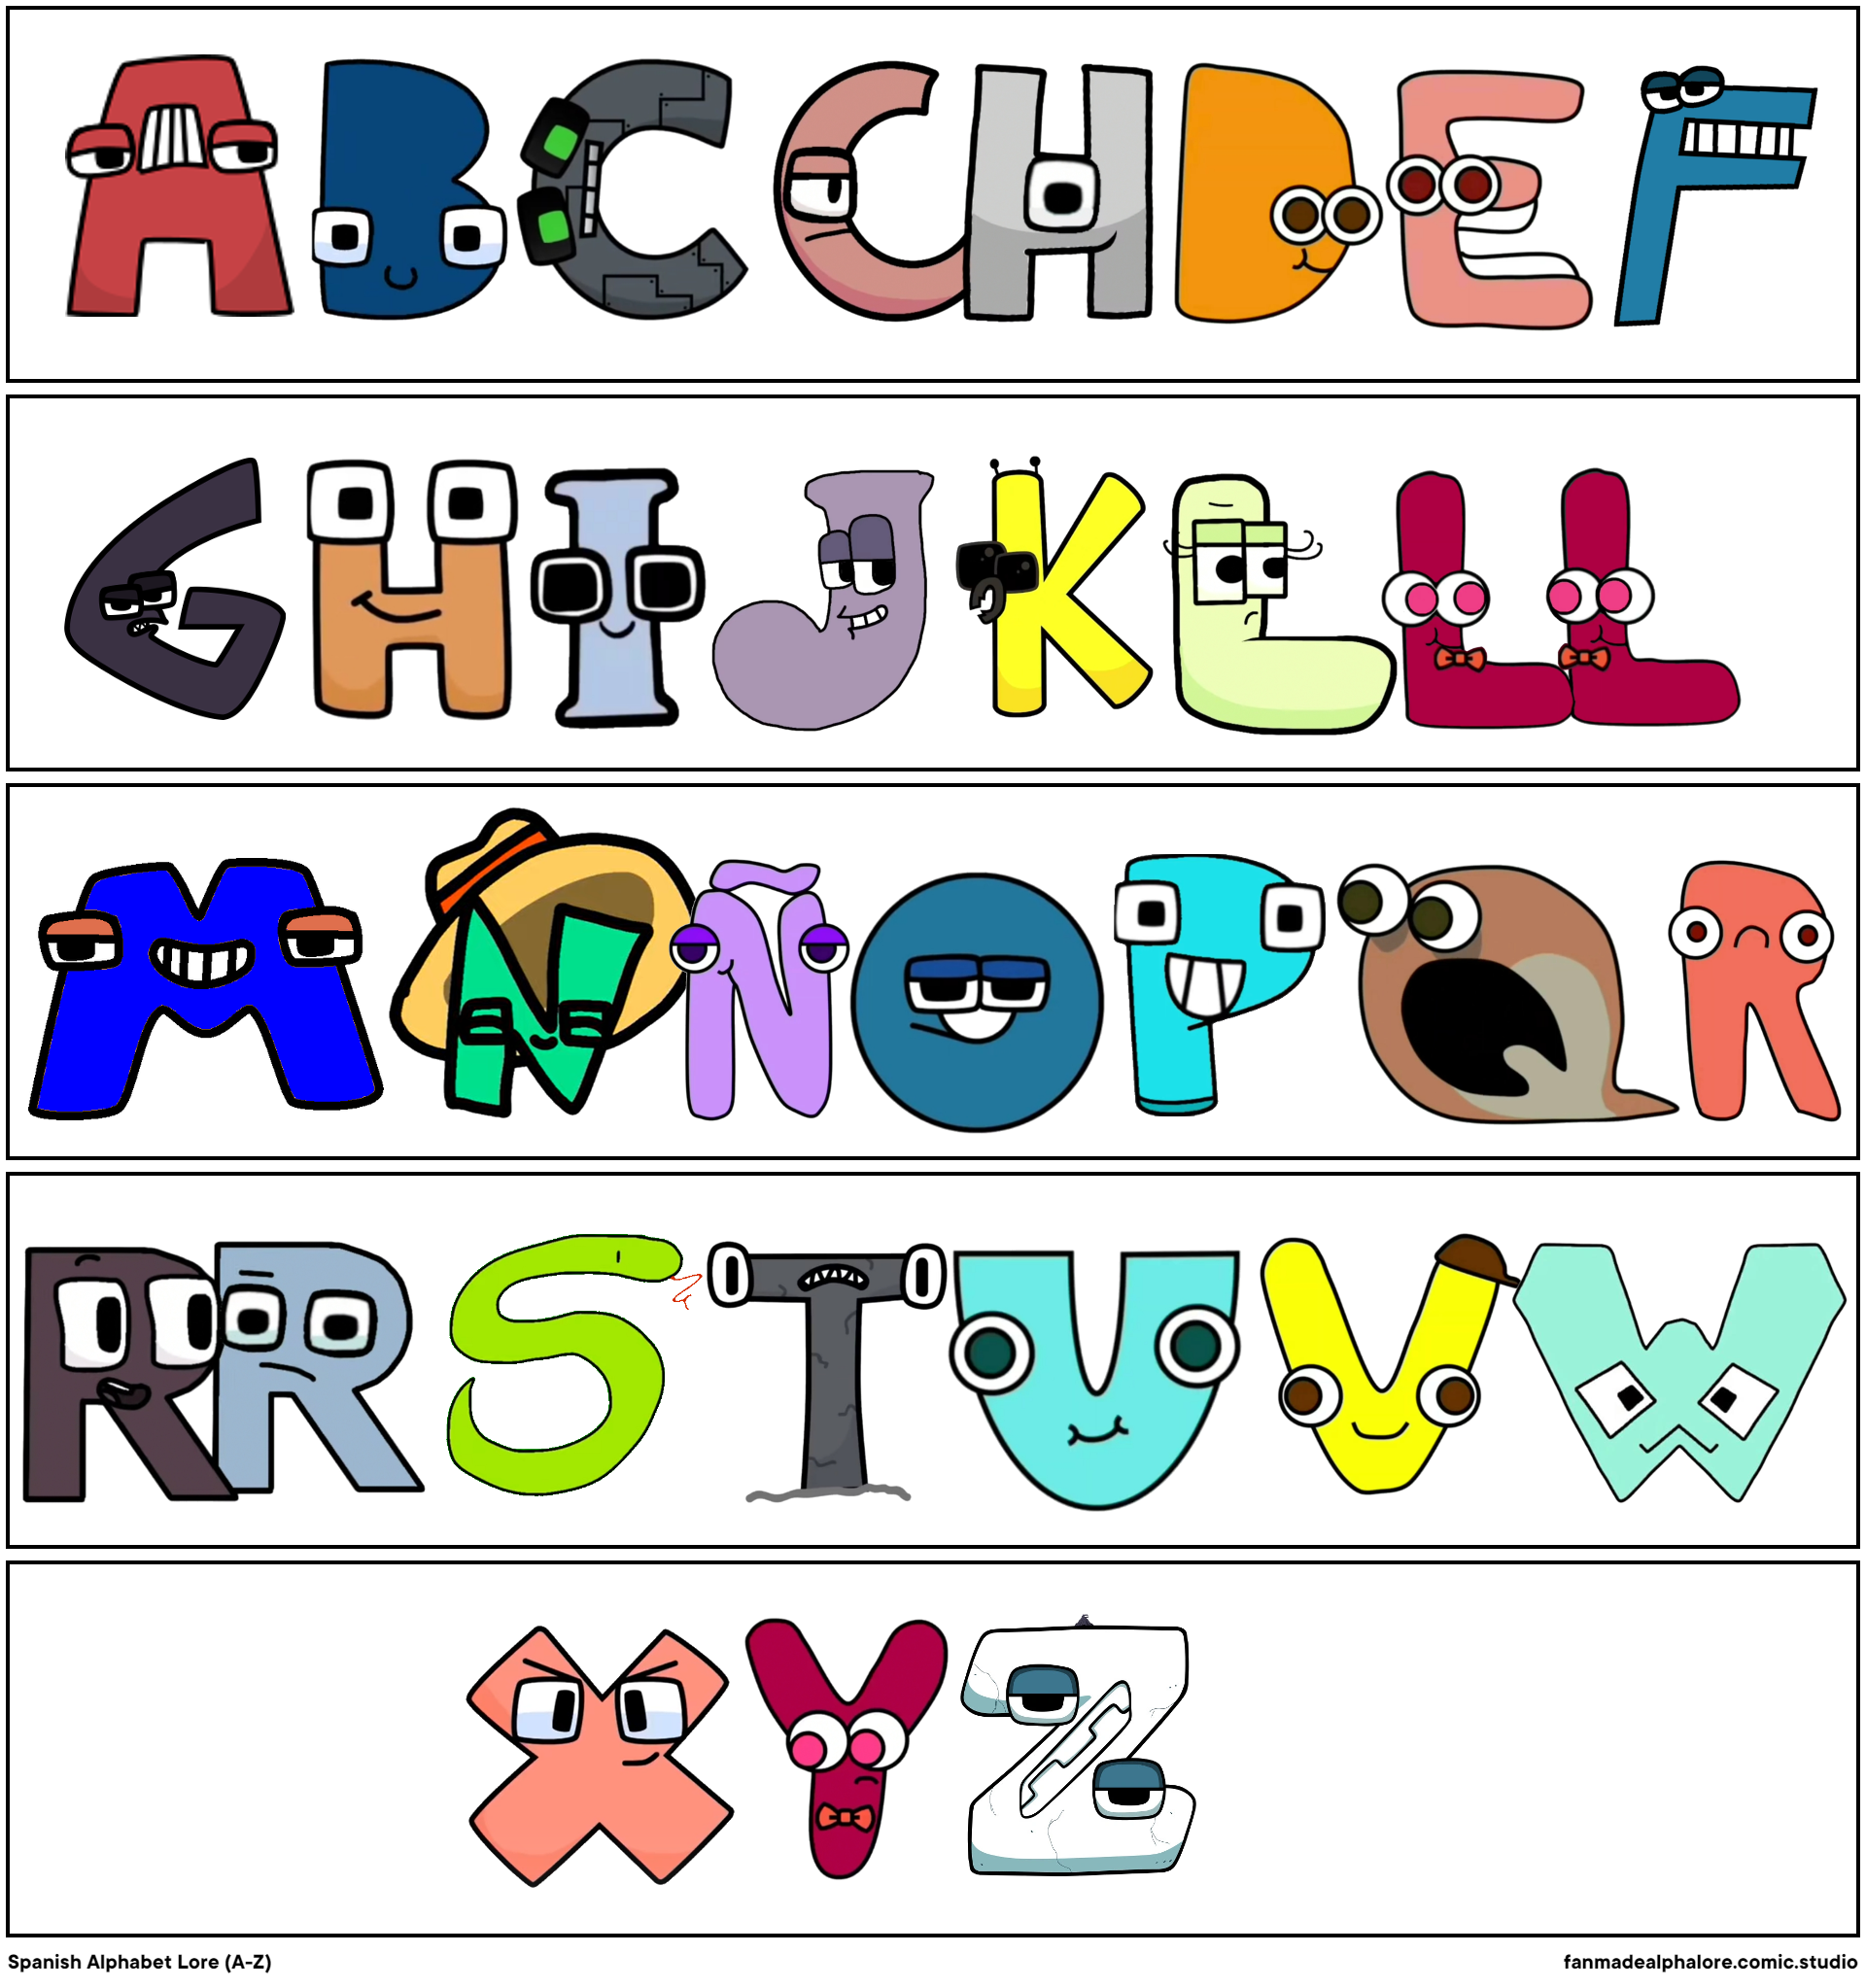 RobWords' New Alphabet Lore - Comic Studio